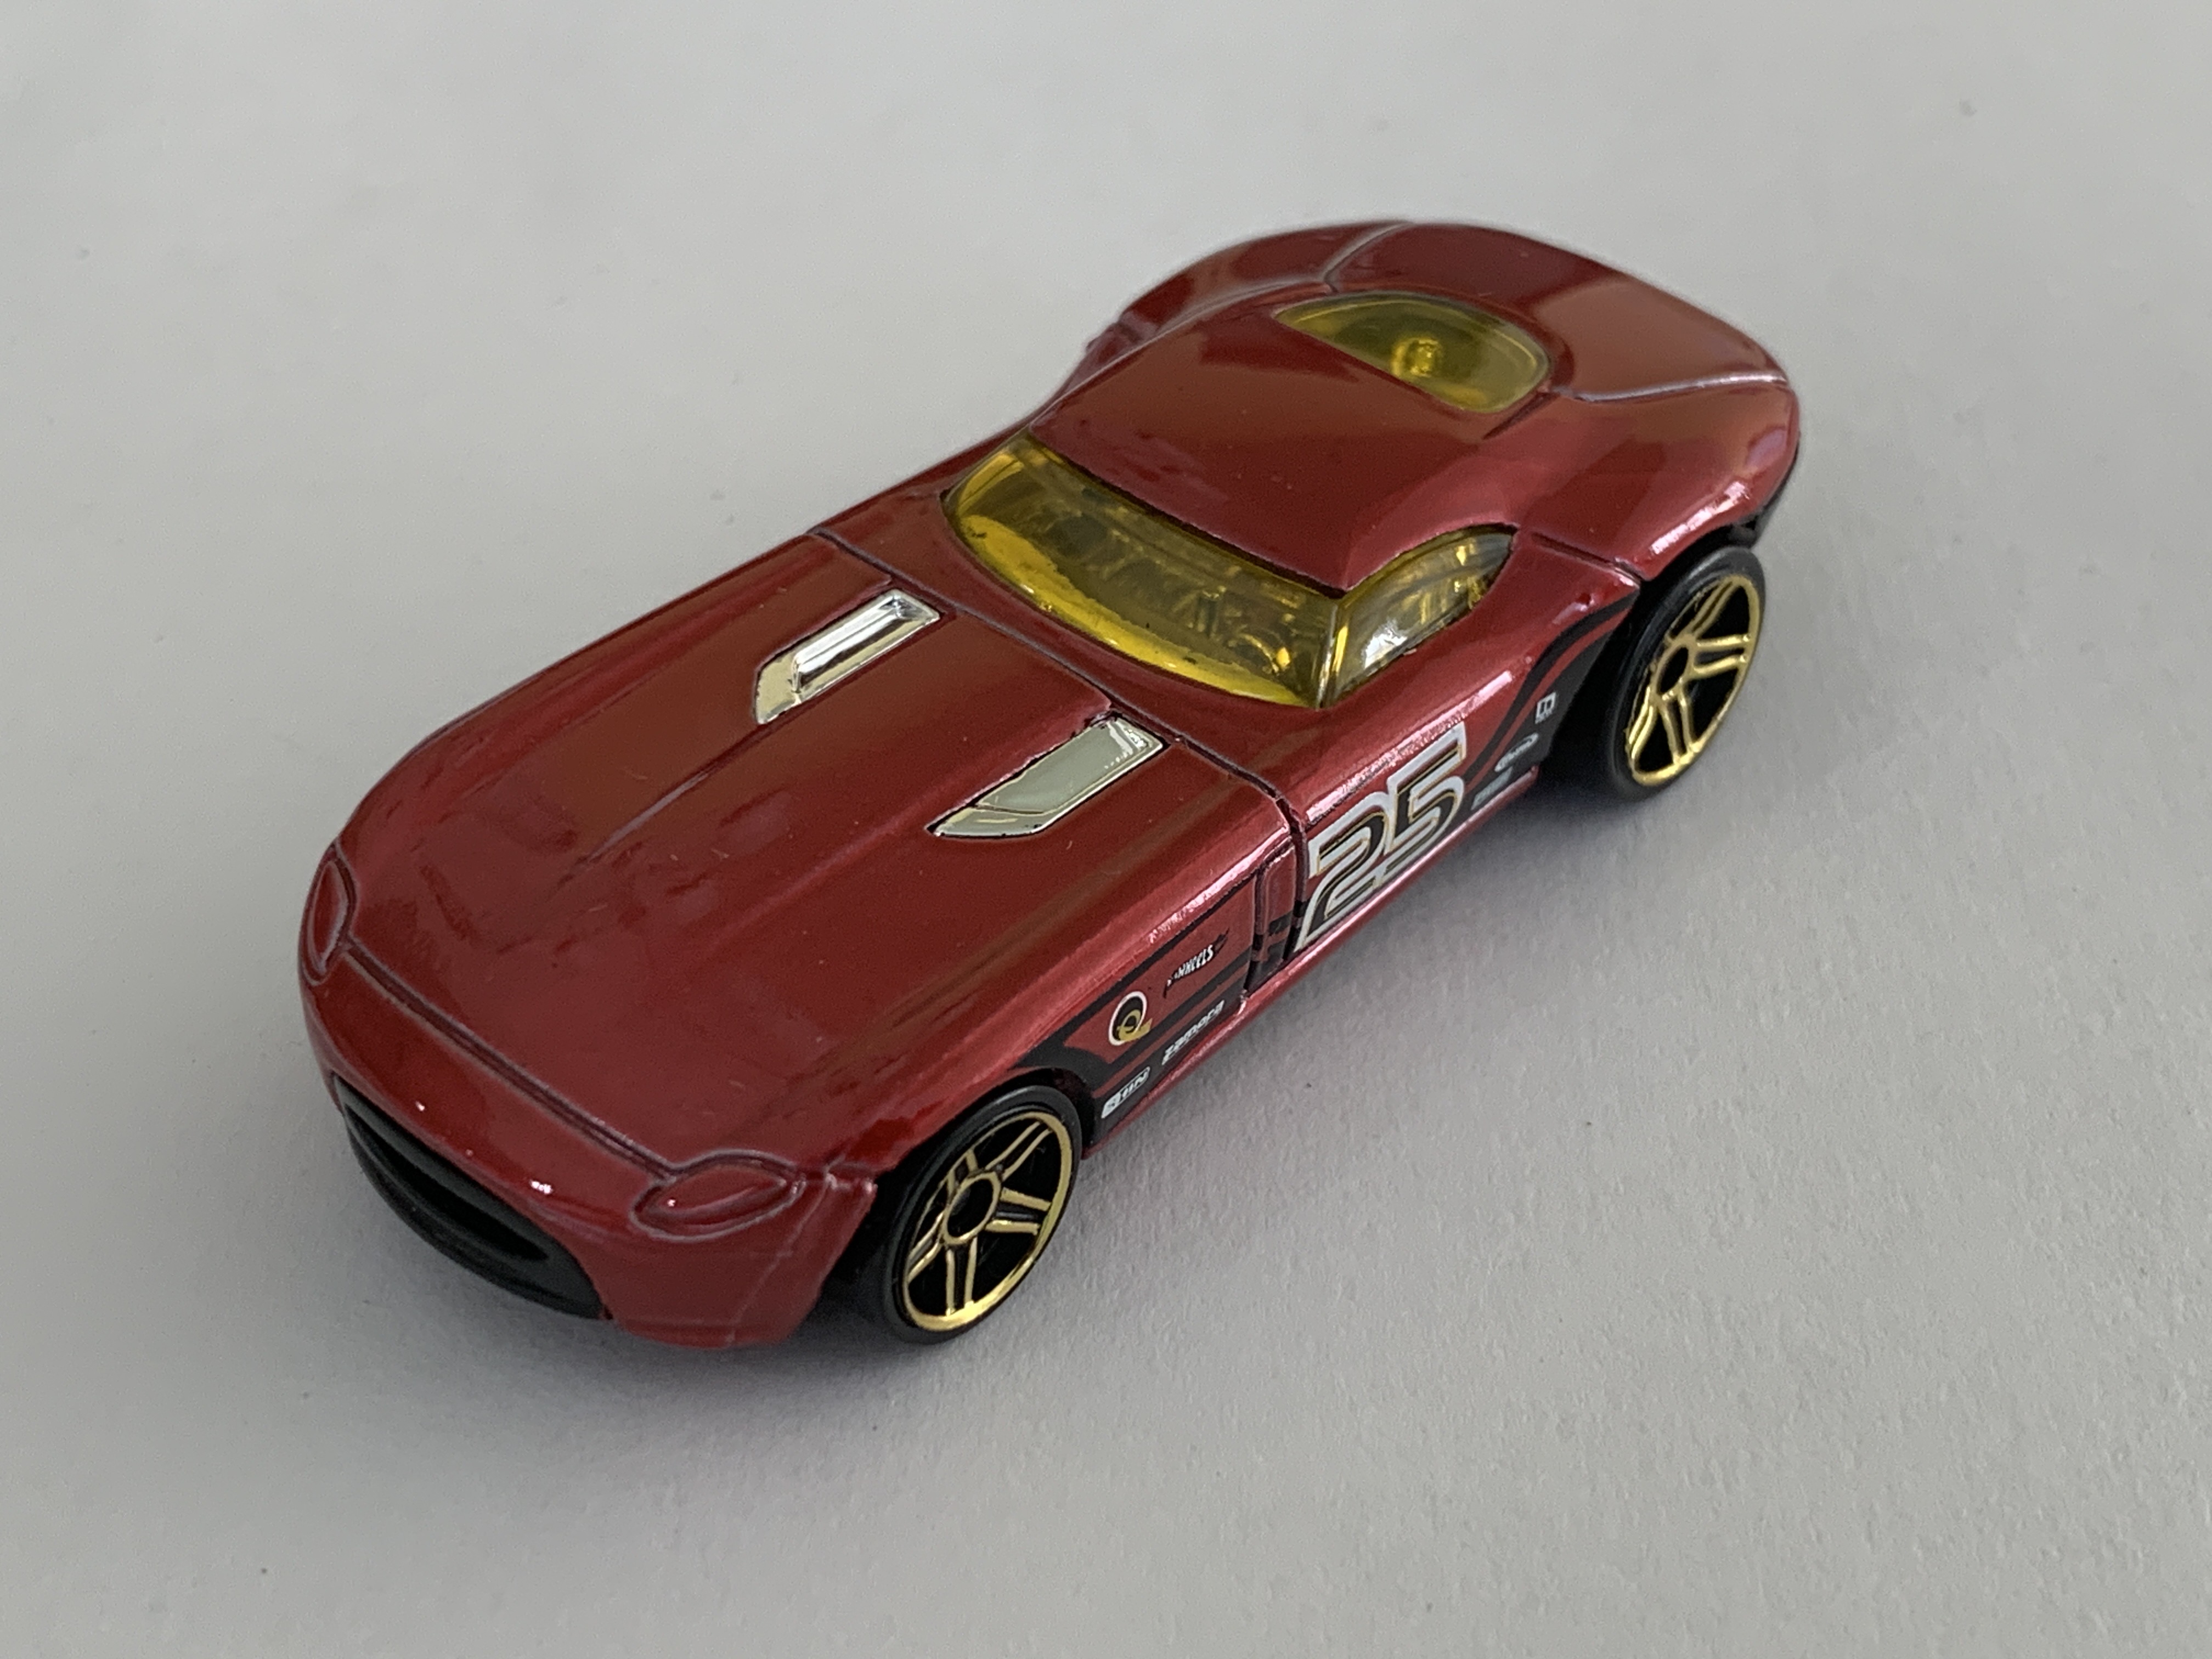 Hot Wheels Fast Felion Mystery Car - Red